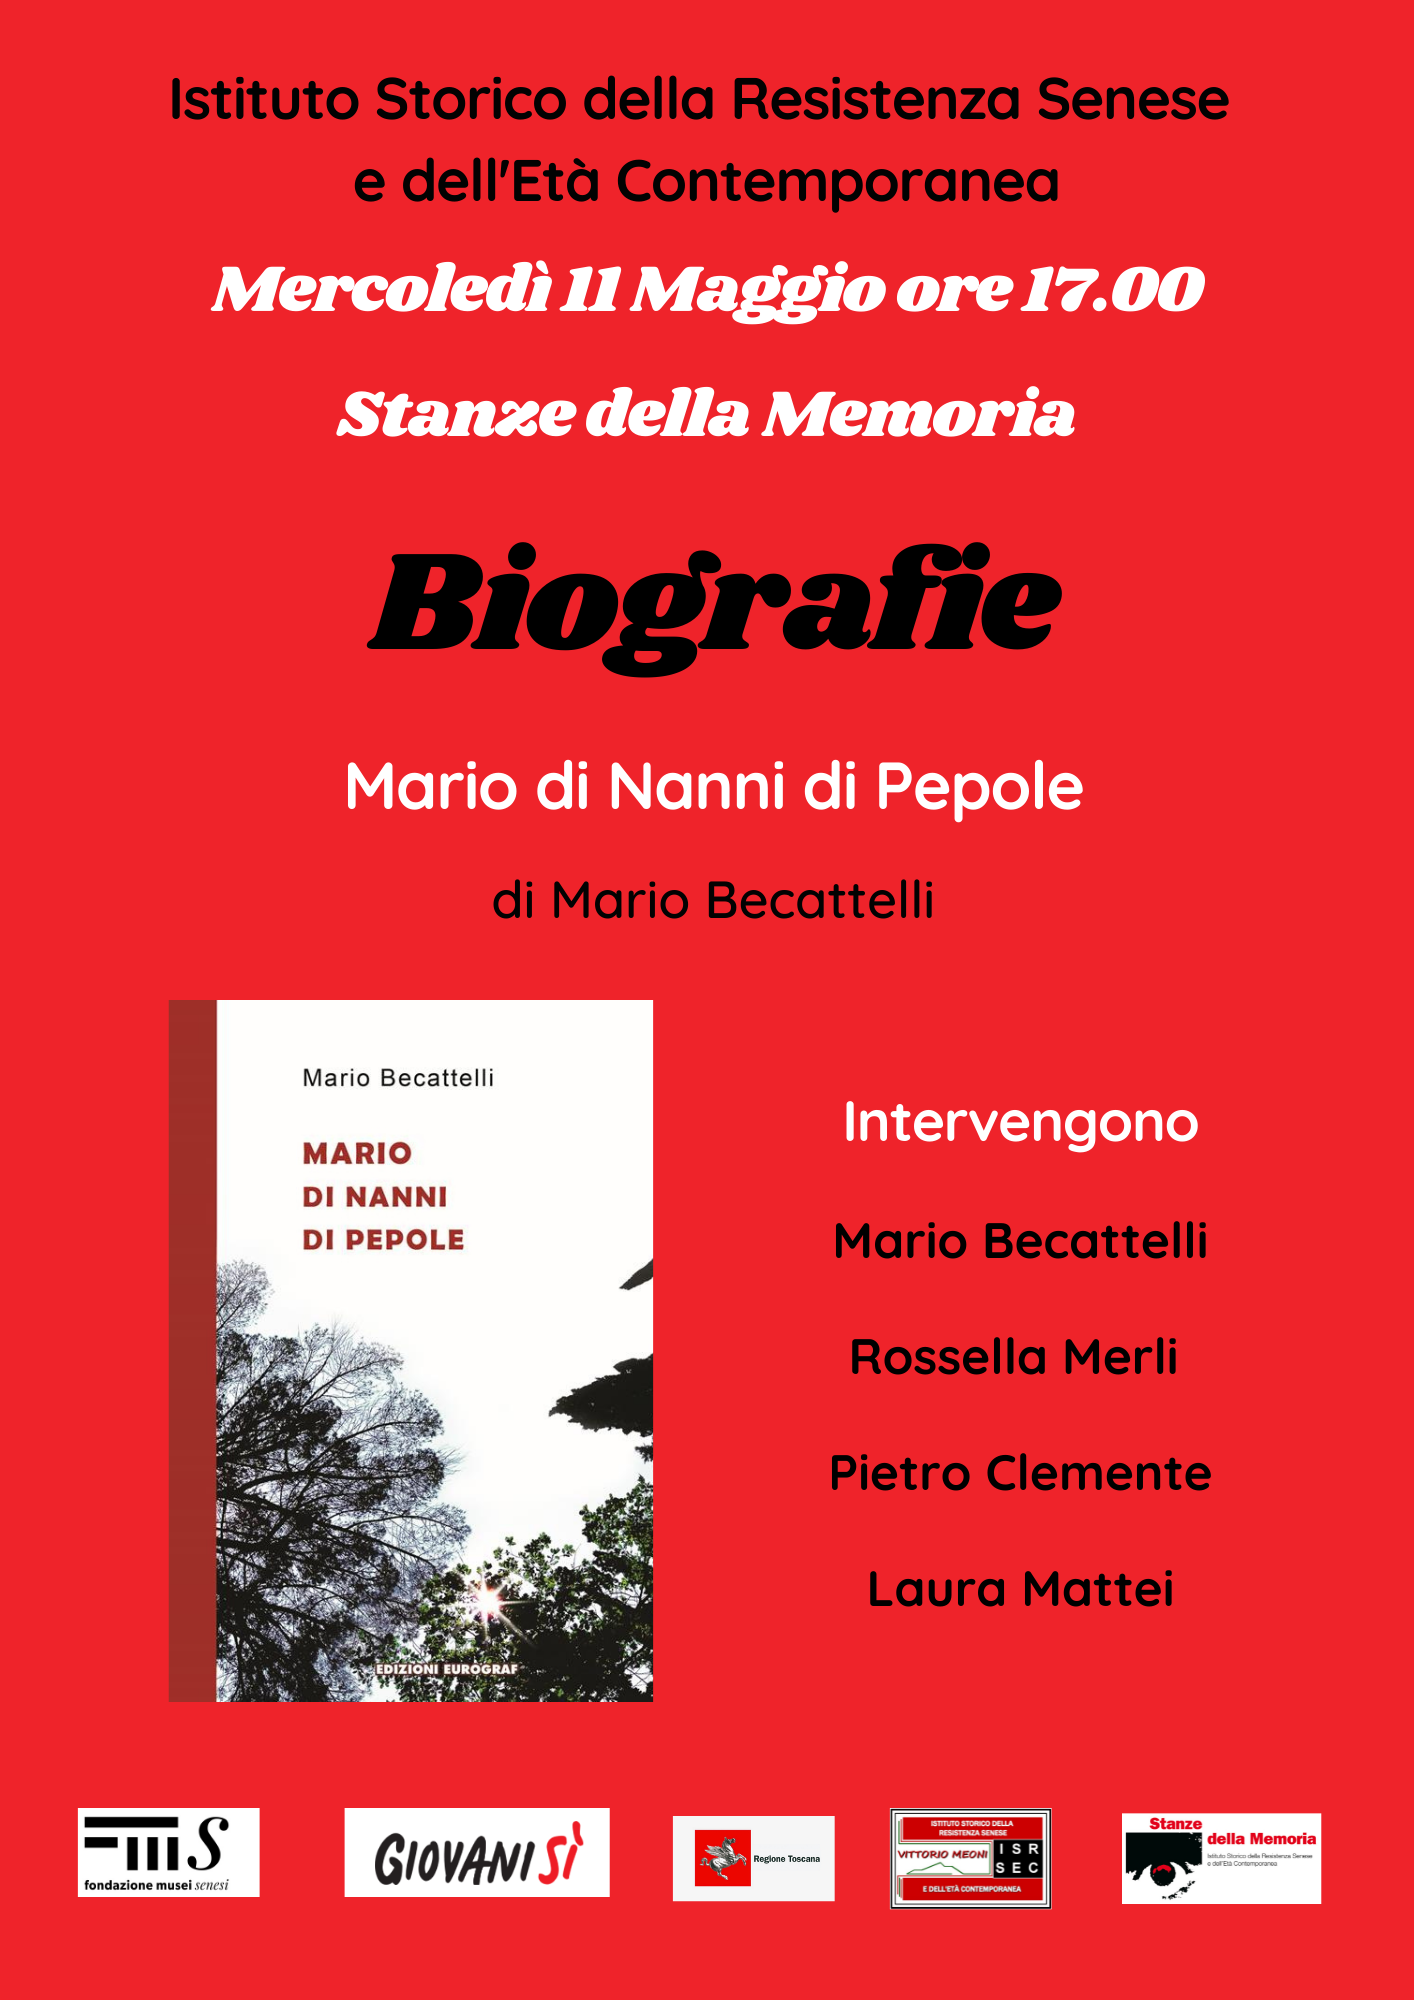 11 maggio 17:00. Promemoria. Presentazione del libro "Mario di Nanni di Pepole" di Mario Becattelli